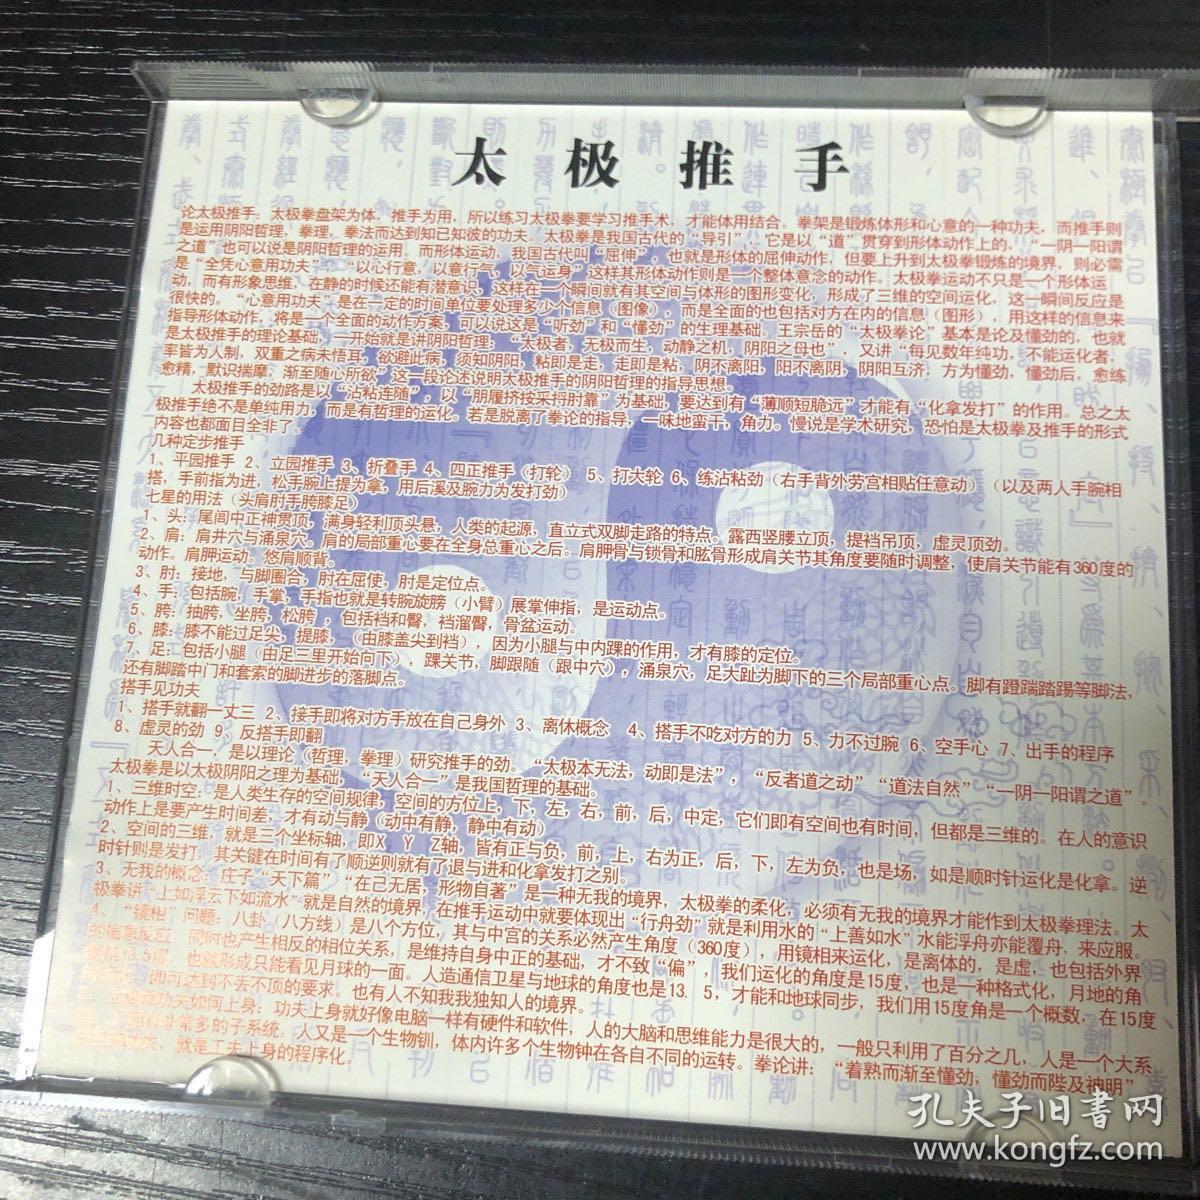 【碟片】【CD】  太极推手   北京武术院      讲解：高壮飞  【1张碟片】  【满20元包邮】